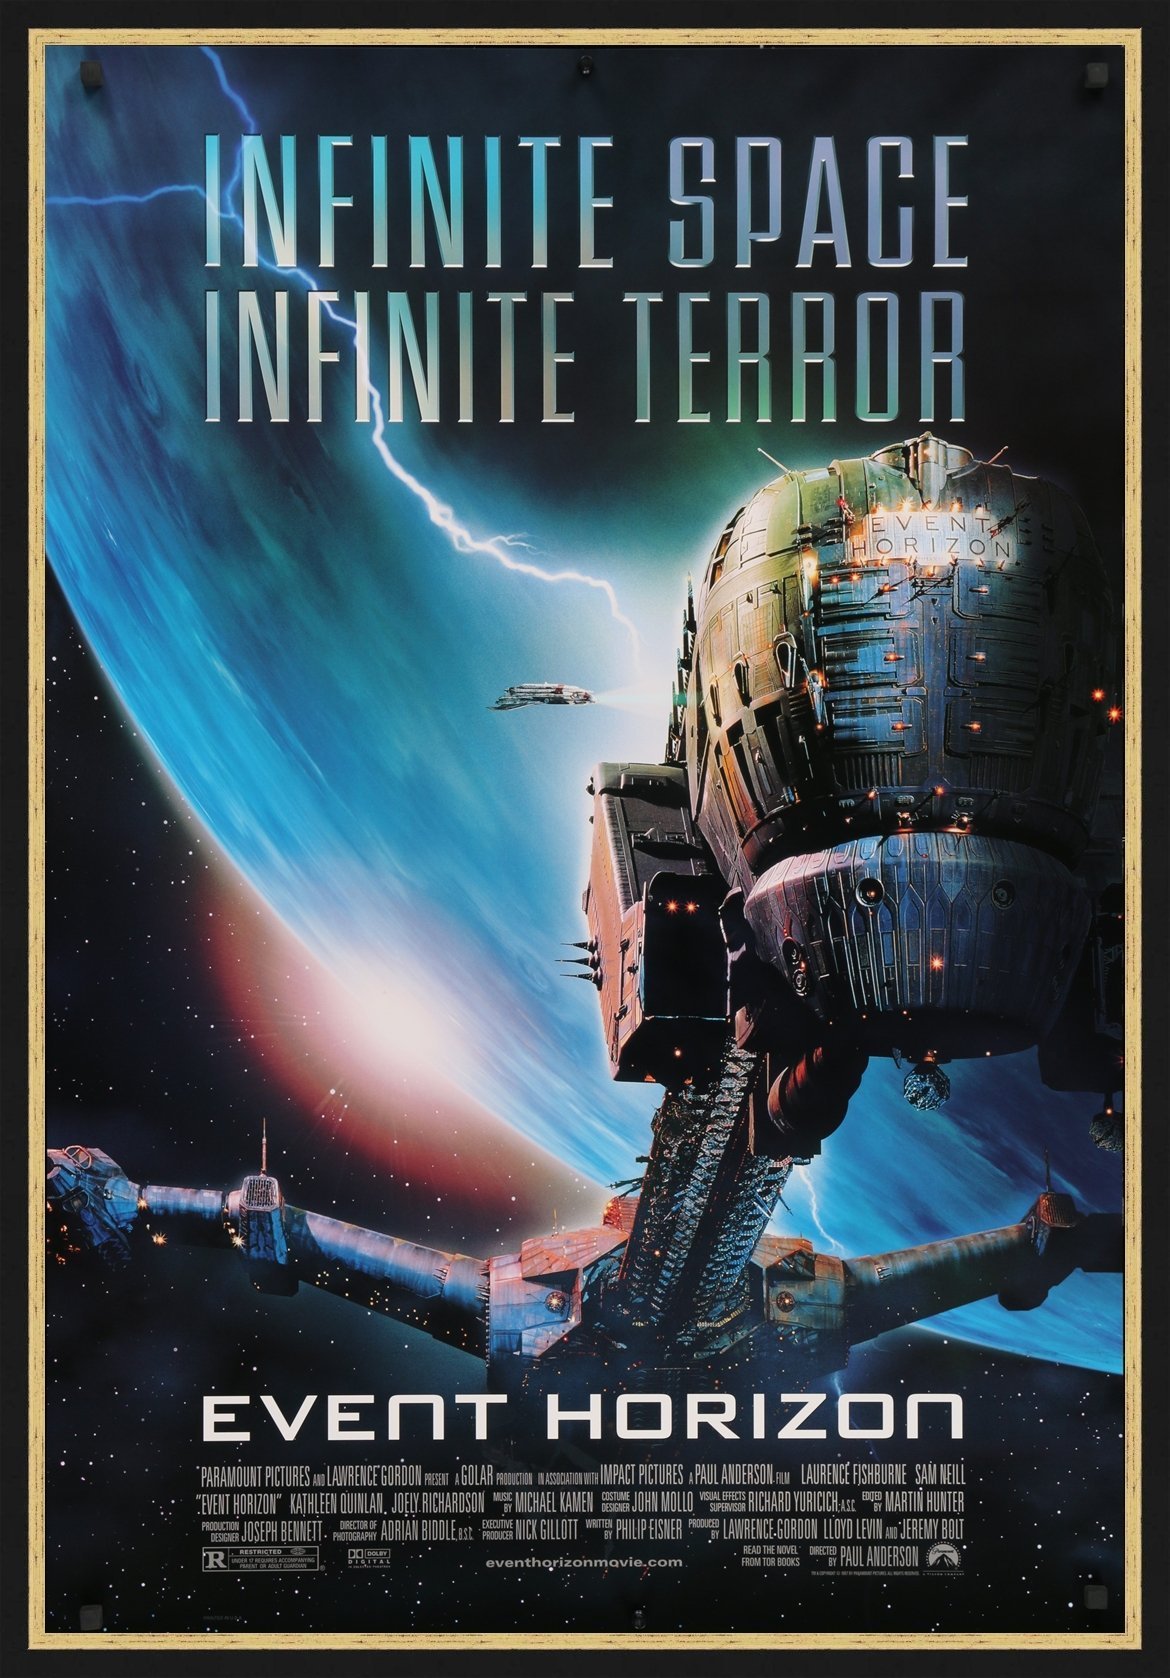 An original movie poster for the film Event Horizon